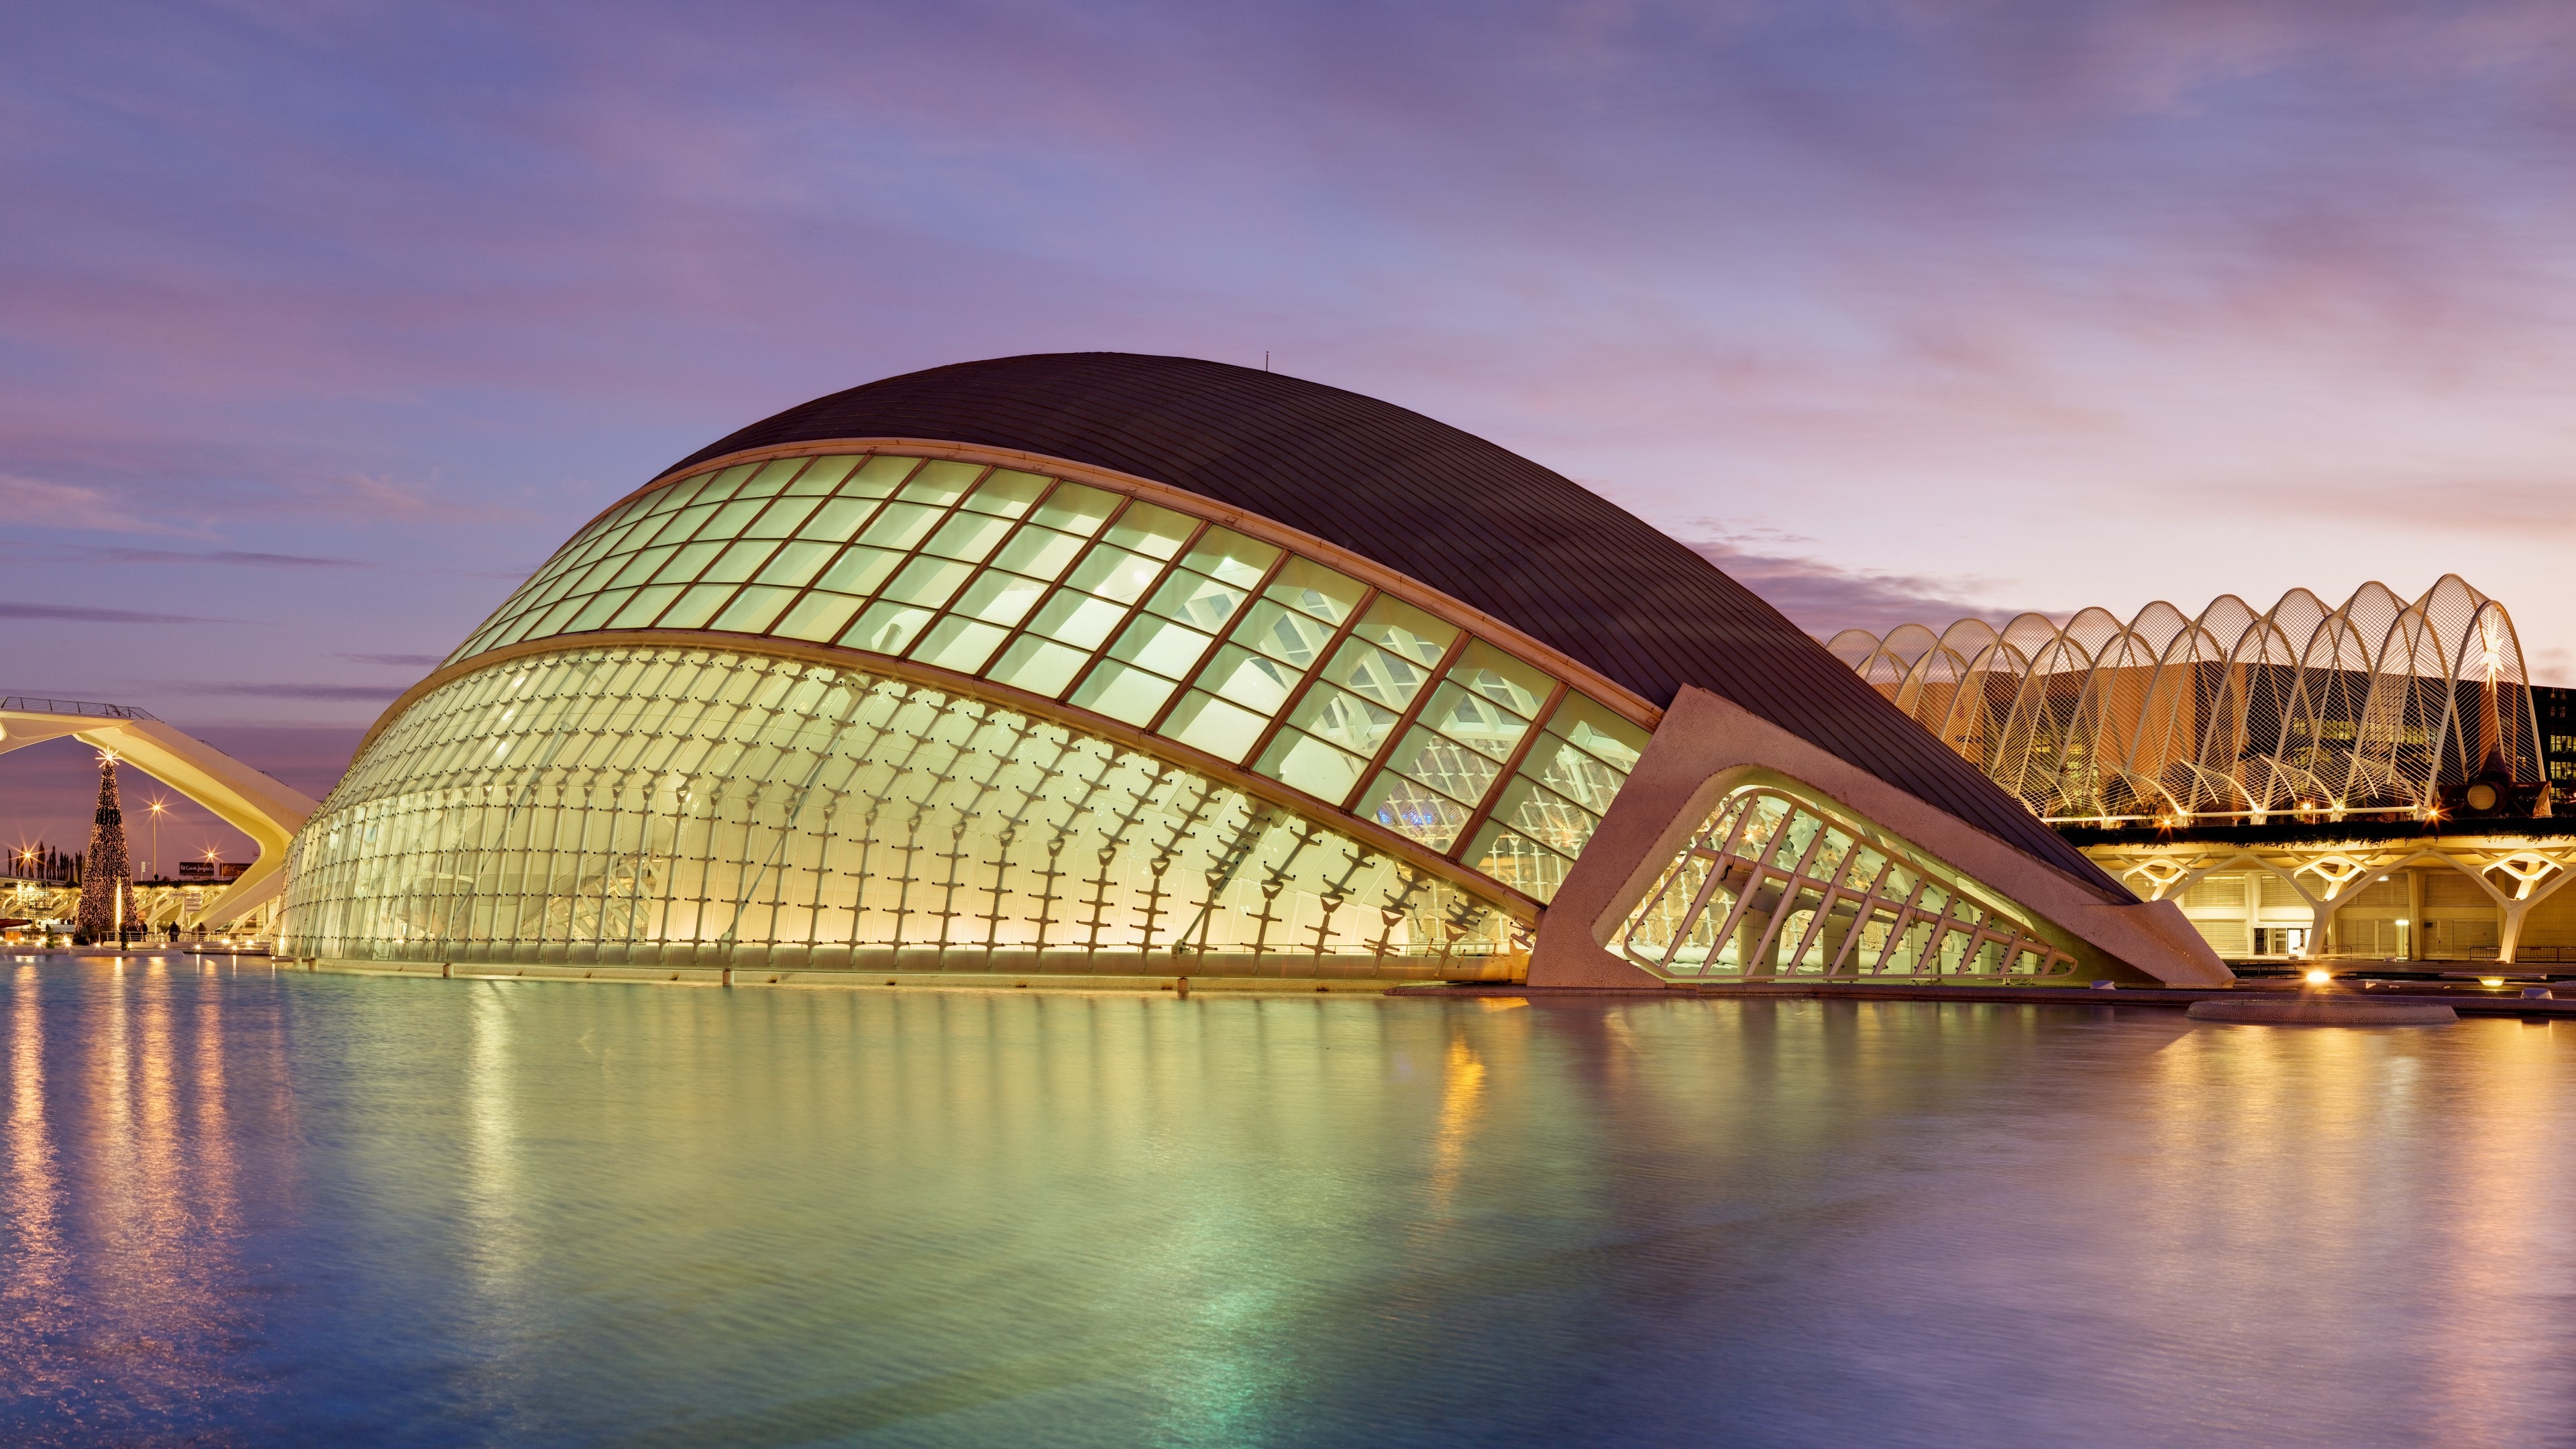 Planetarium city of arts and sciences, Valencian tourism, Architectural beauty, Travel destination, 3840x2160 4K Desktop